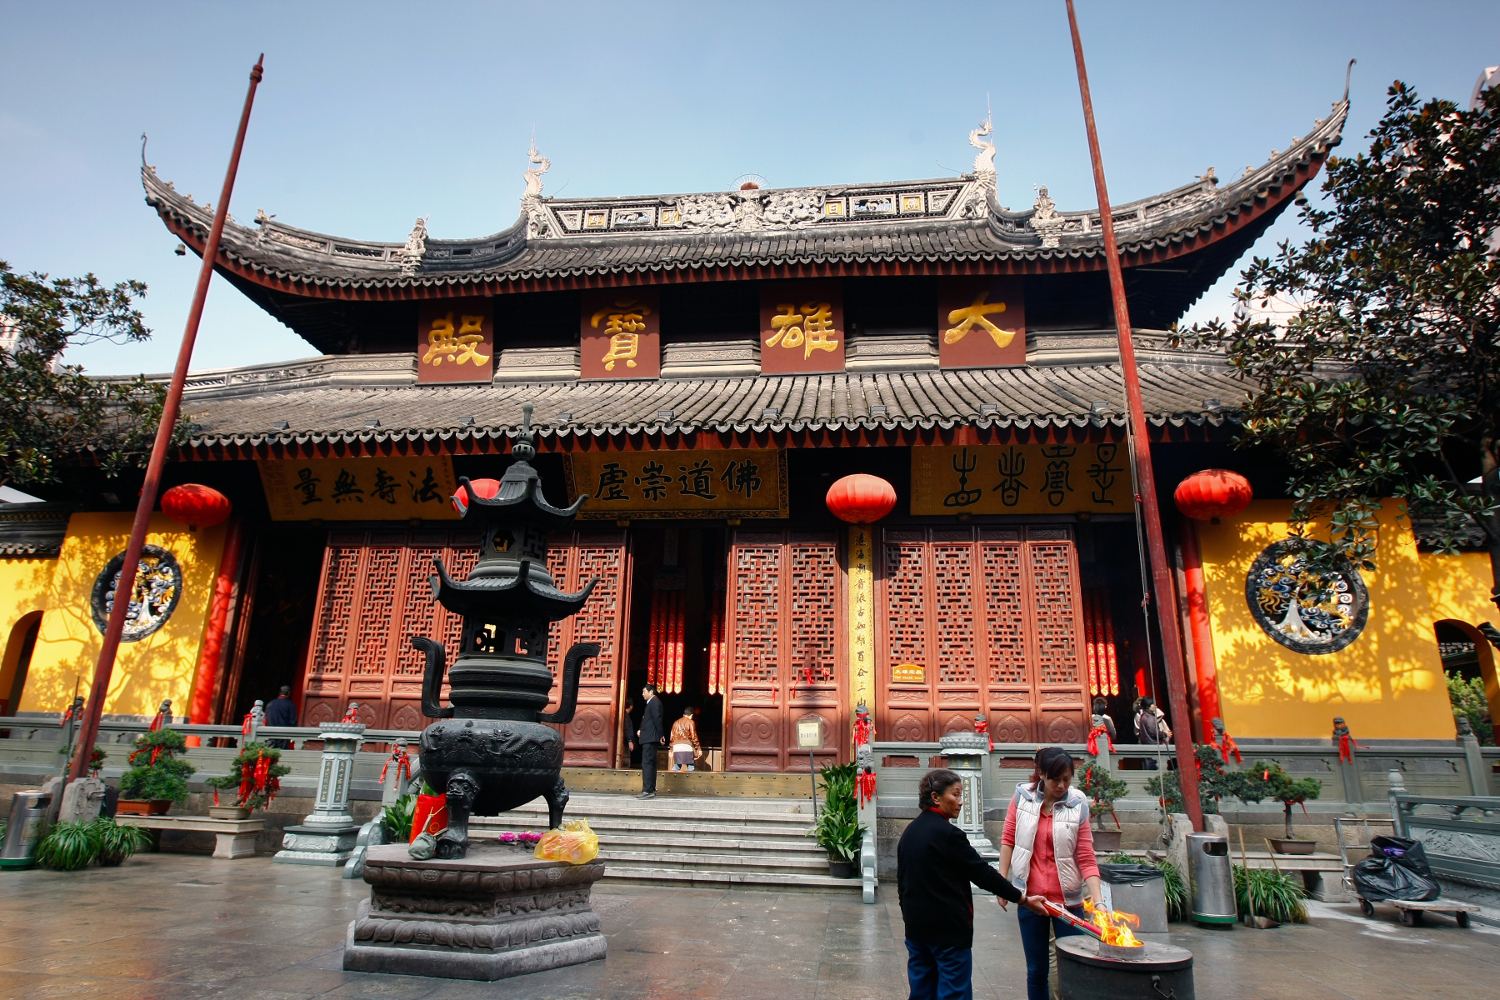  Temple  du Bouddha  de Jade Ouest de Shanghai en Chine 